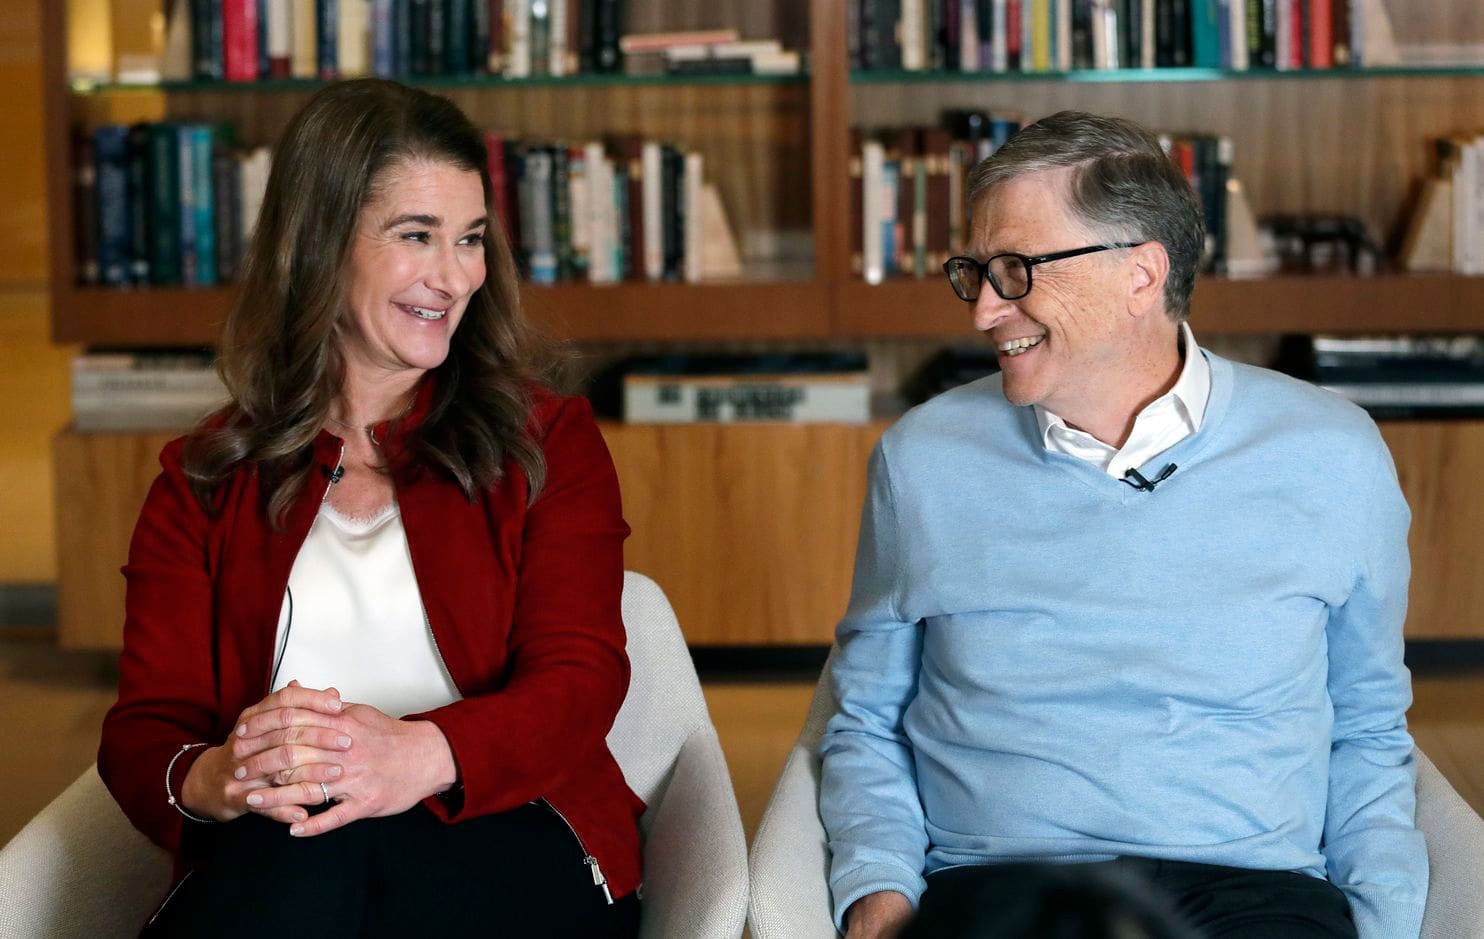 Đừng tưởng tỷ phú rửa bát Bill Gates đã ngoan ngay từ đầu nhé, tất cả là nhờ chiêu dạy chồng bài bản của người vợ bản lĩnh này đây - Ảnh 1.